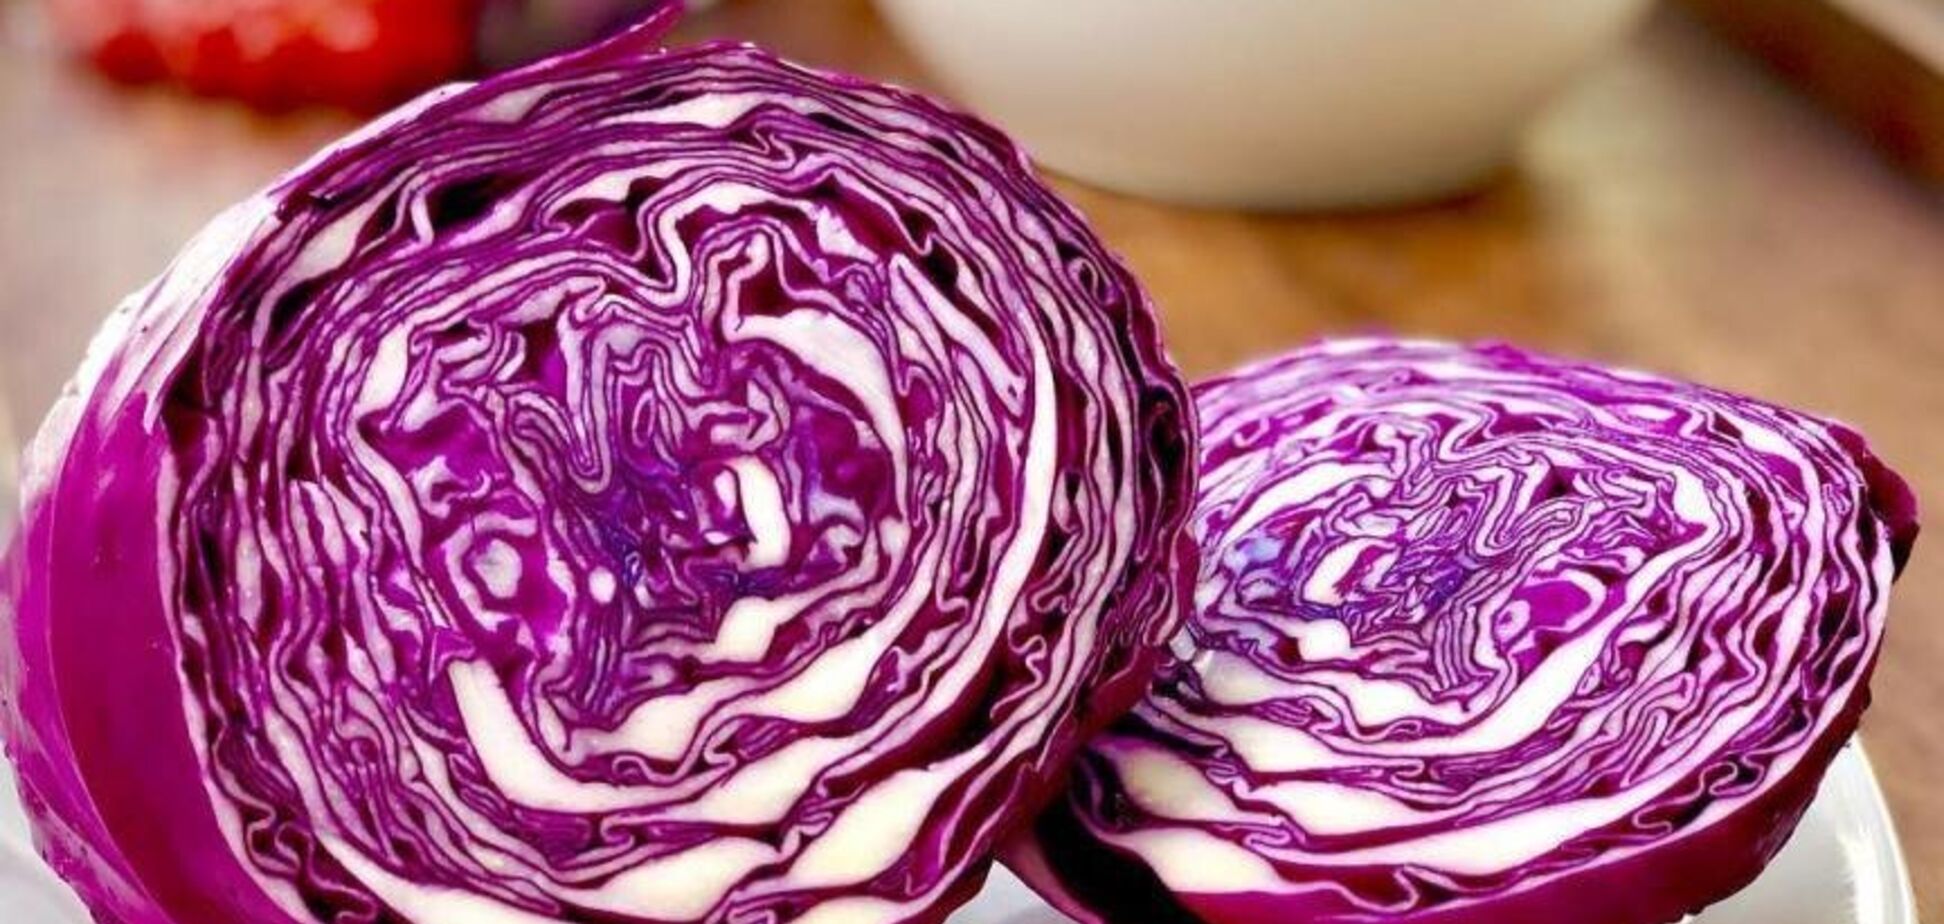 Какой вкусный салат приготовить из фиолетовой капусты: вариант бюджетного блюда